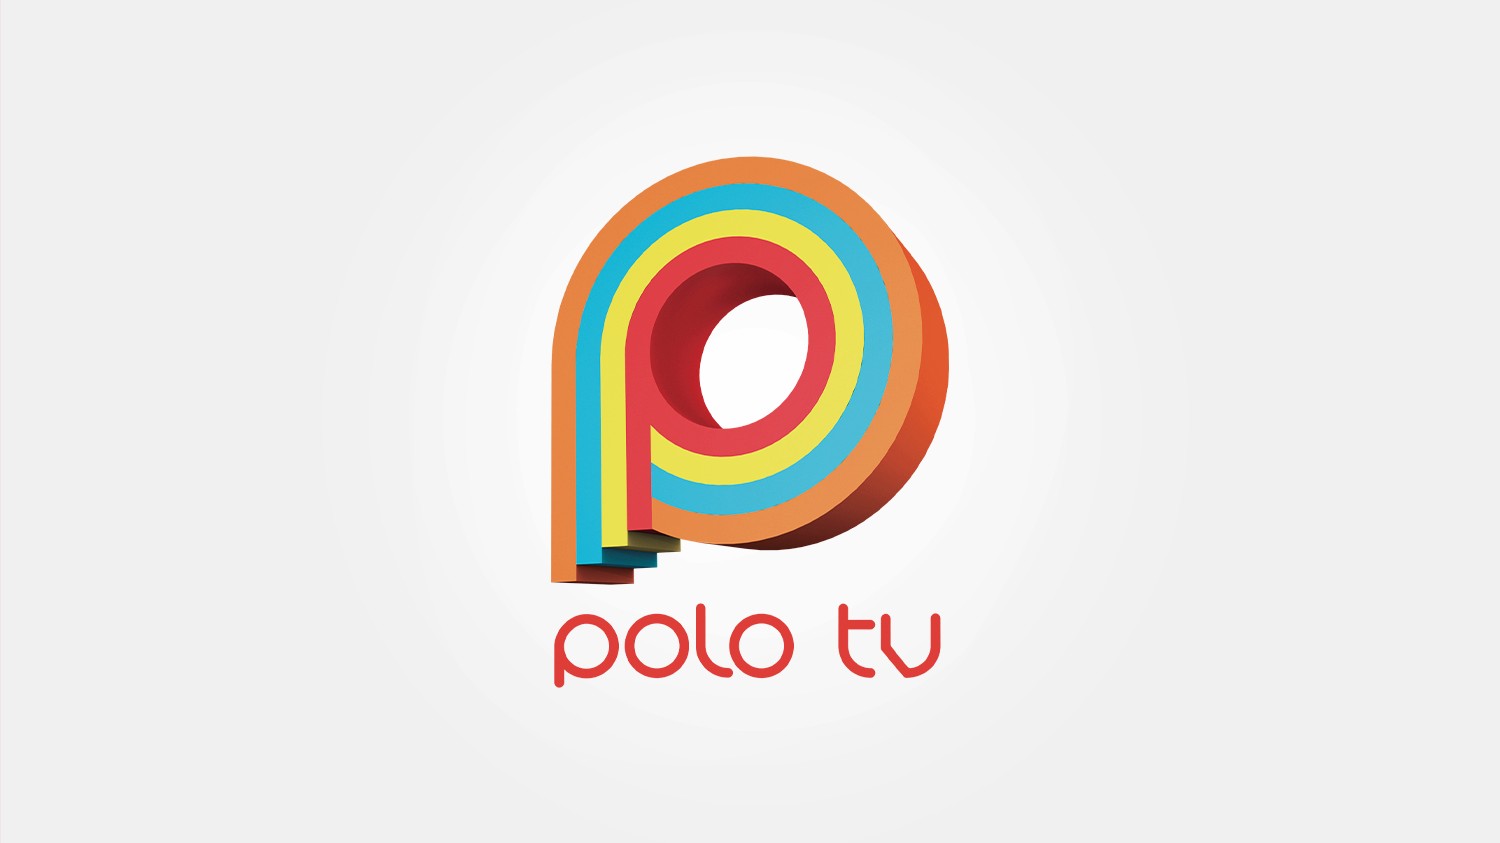 Polo Tv - najchętniej oglądana telewizja disco polo w Polsce! Najważniejsze informacje